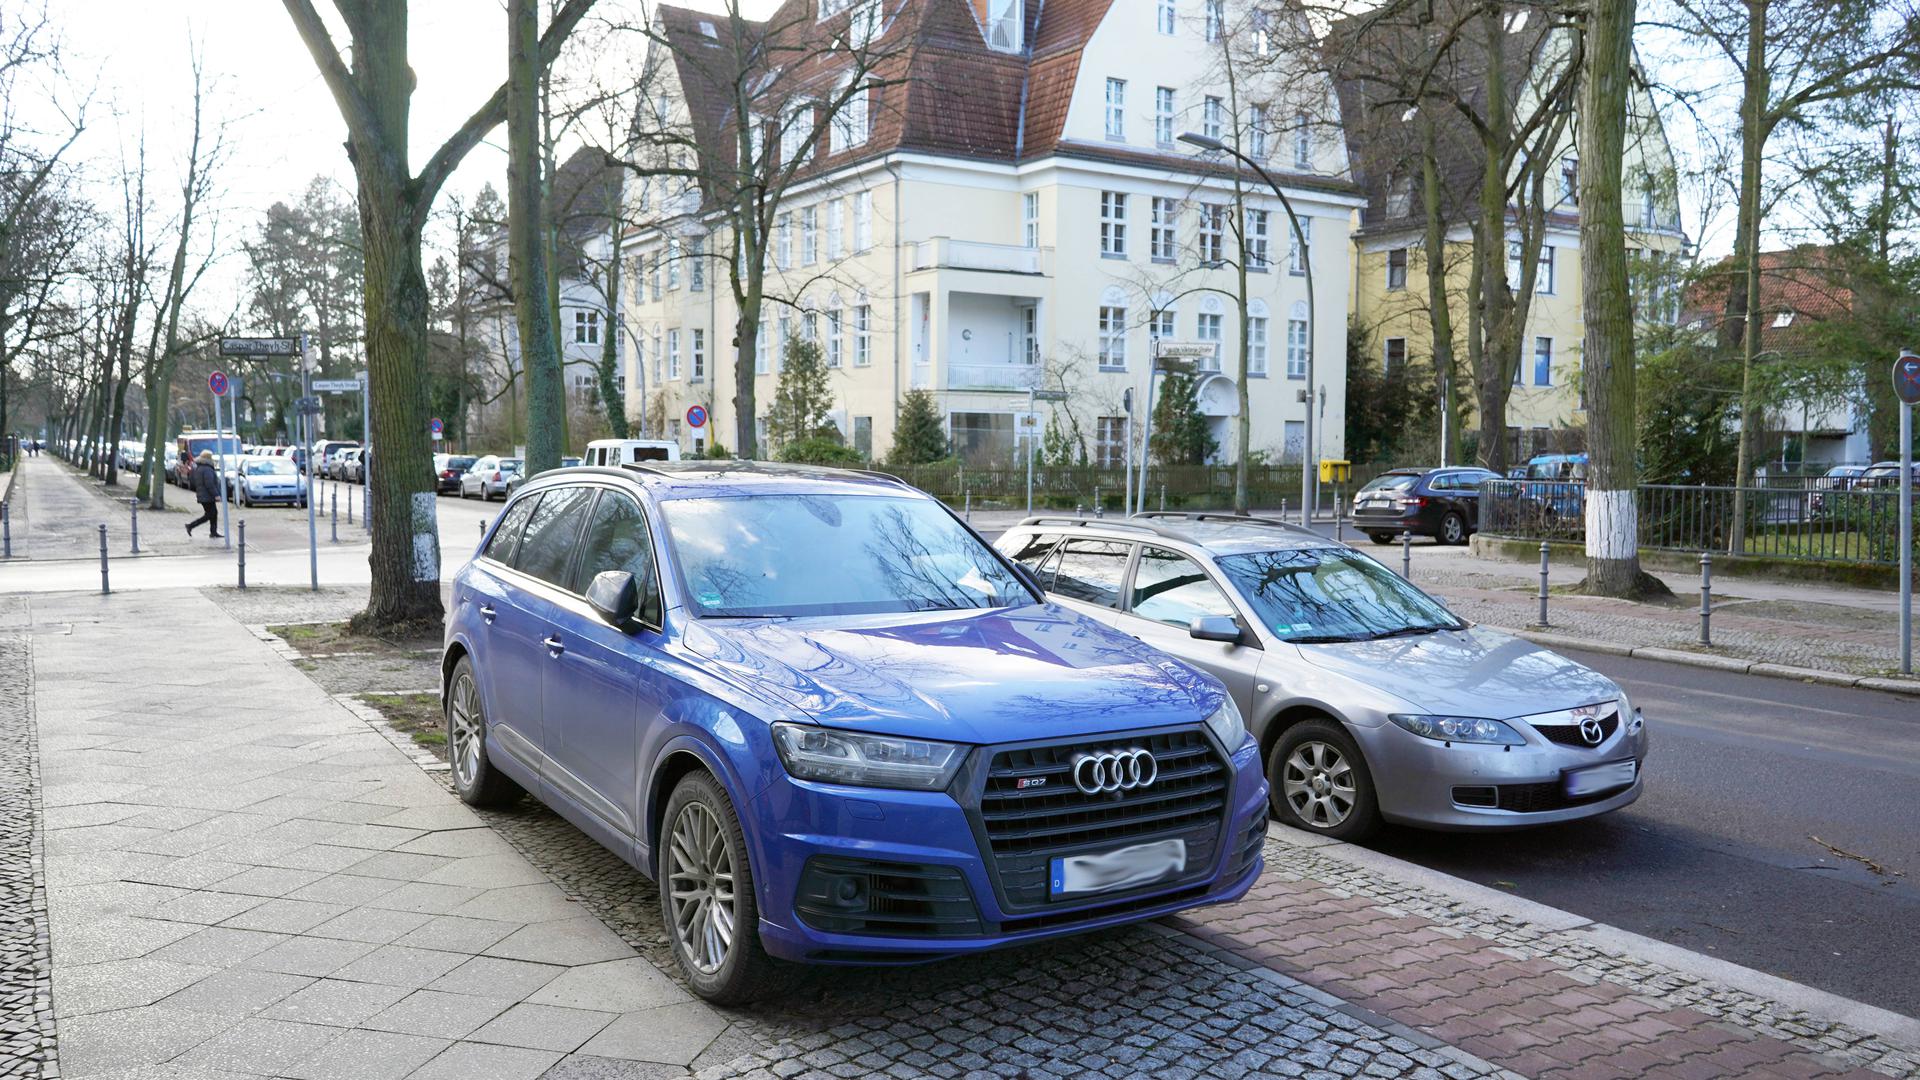 Mancher SUV-Fahrer parkt sogar direkt auf dem Gehsteig, so wie hier in Berlin.